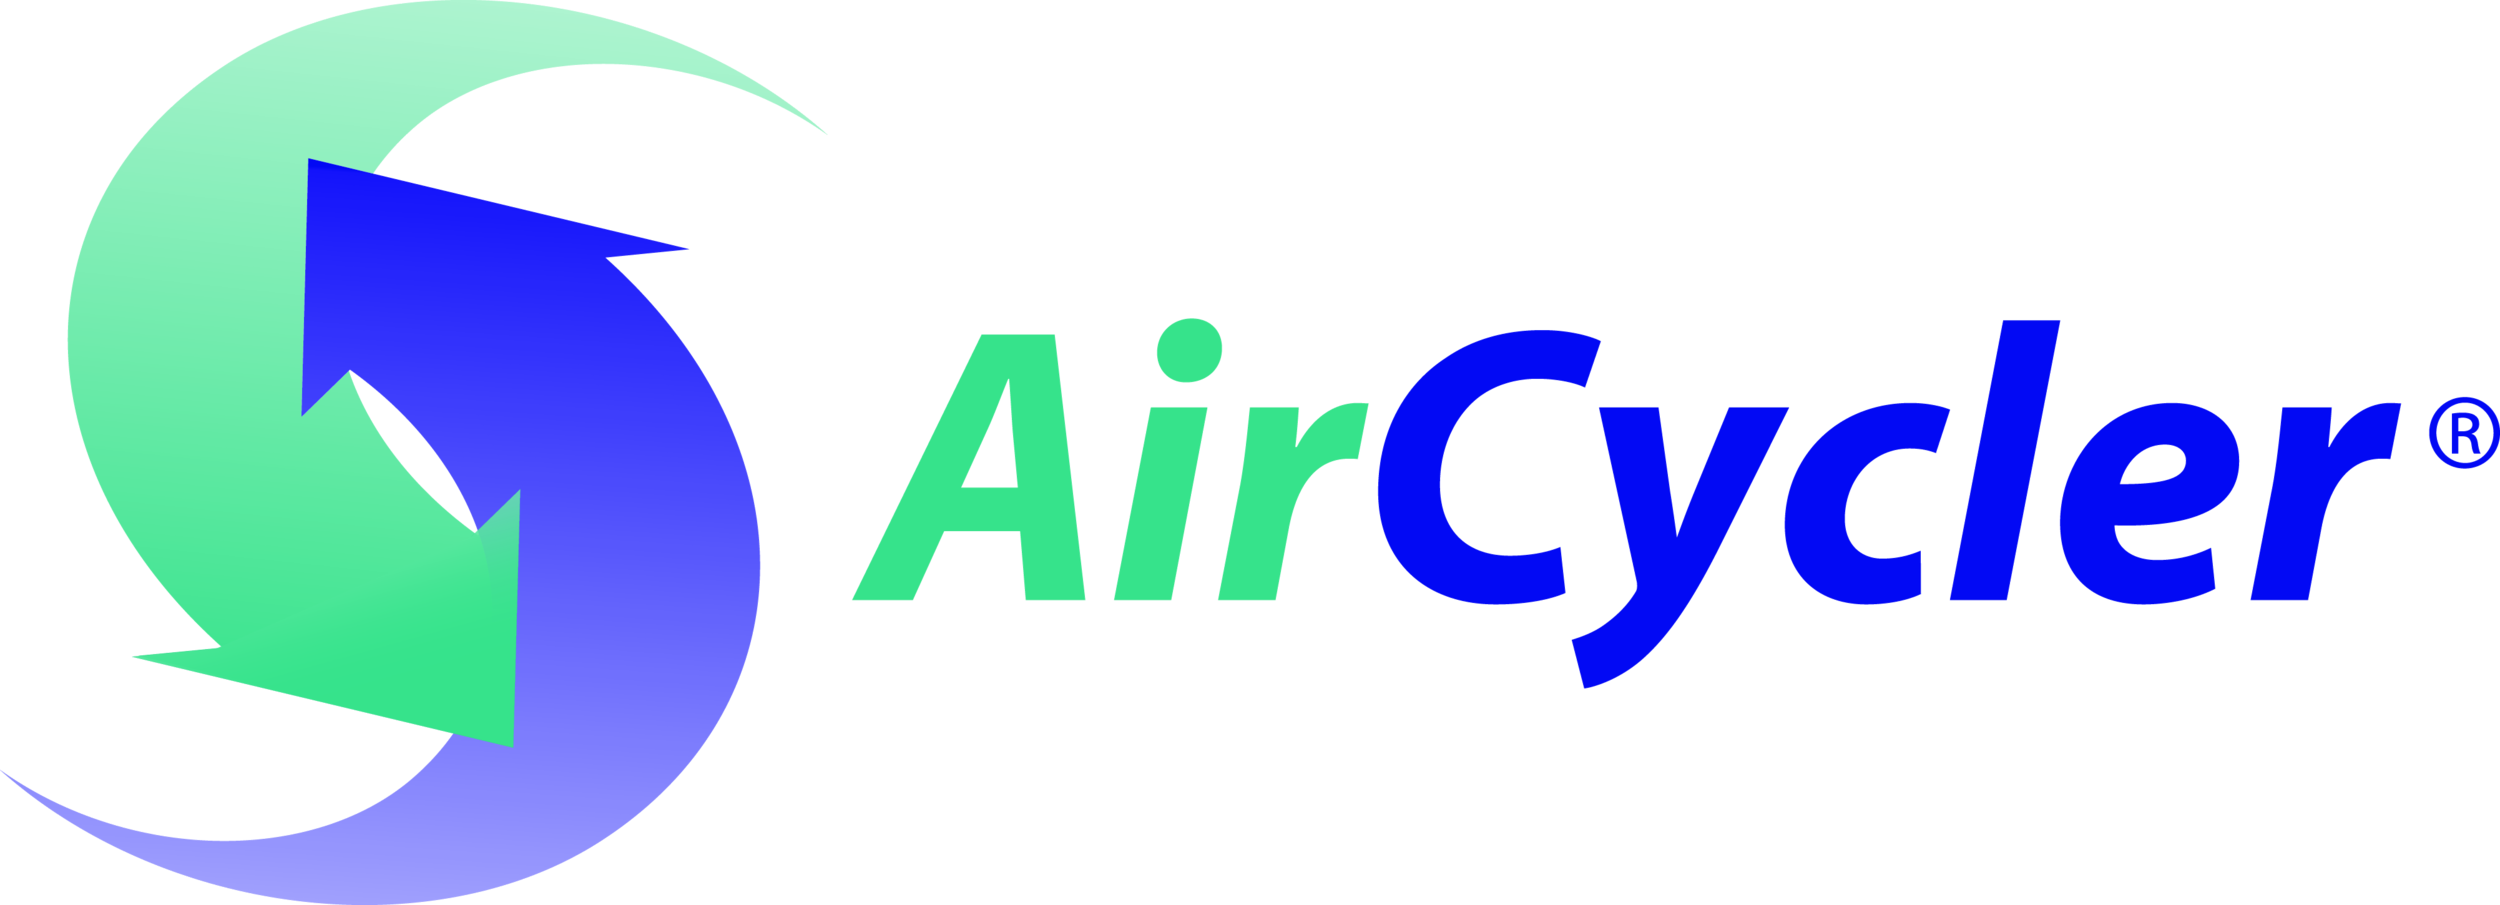 AirCycler Logo.fw.png